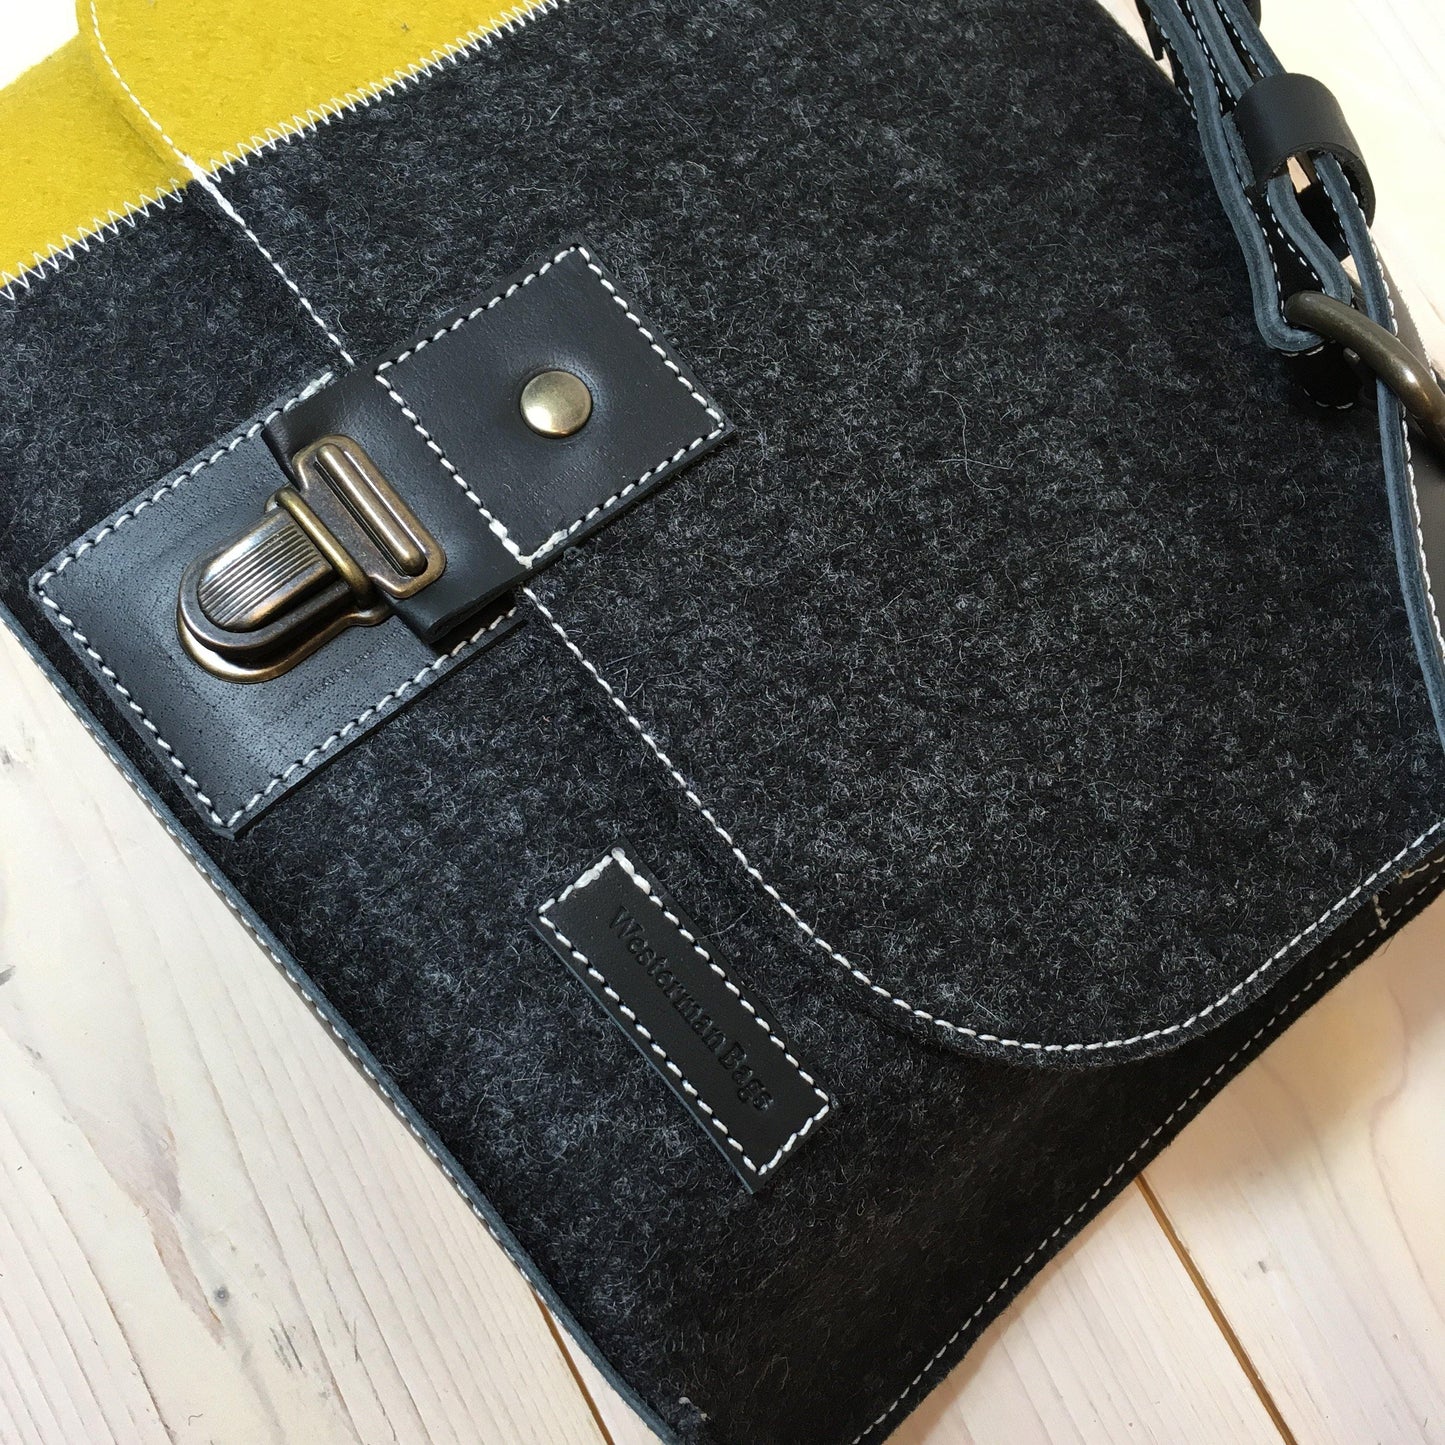 Contrast MESSENGER tas SMALL - zwart geel schoudertas van vilt - limited edition - Westerman Bags vilten tassen en hoezen. Dutch Design.